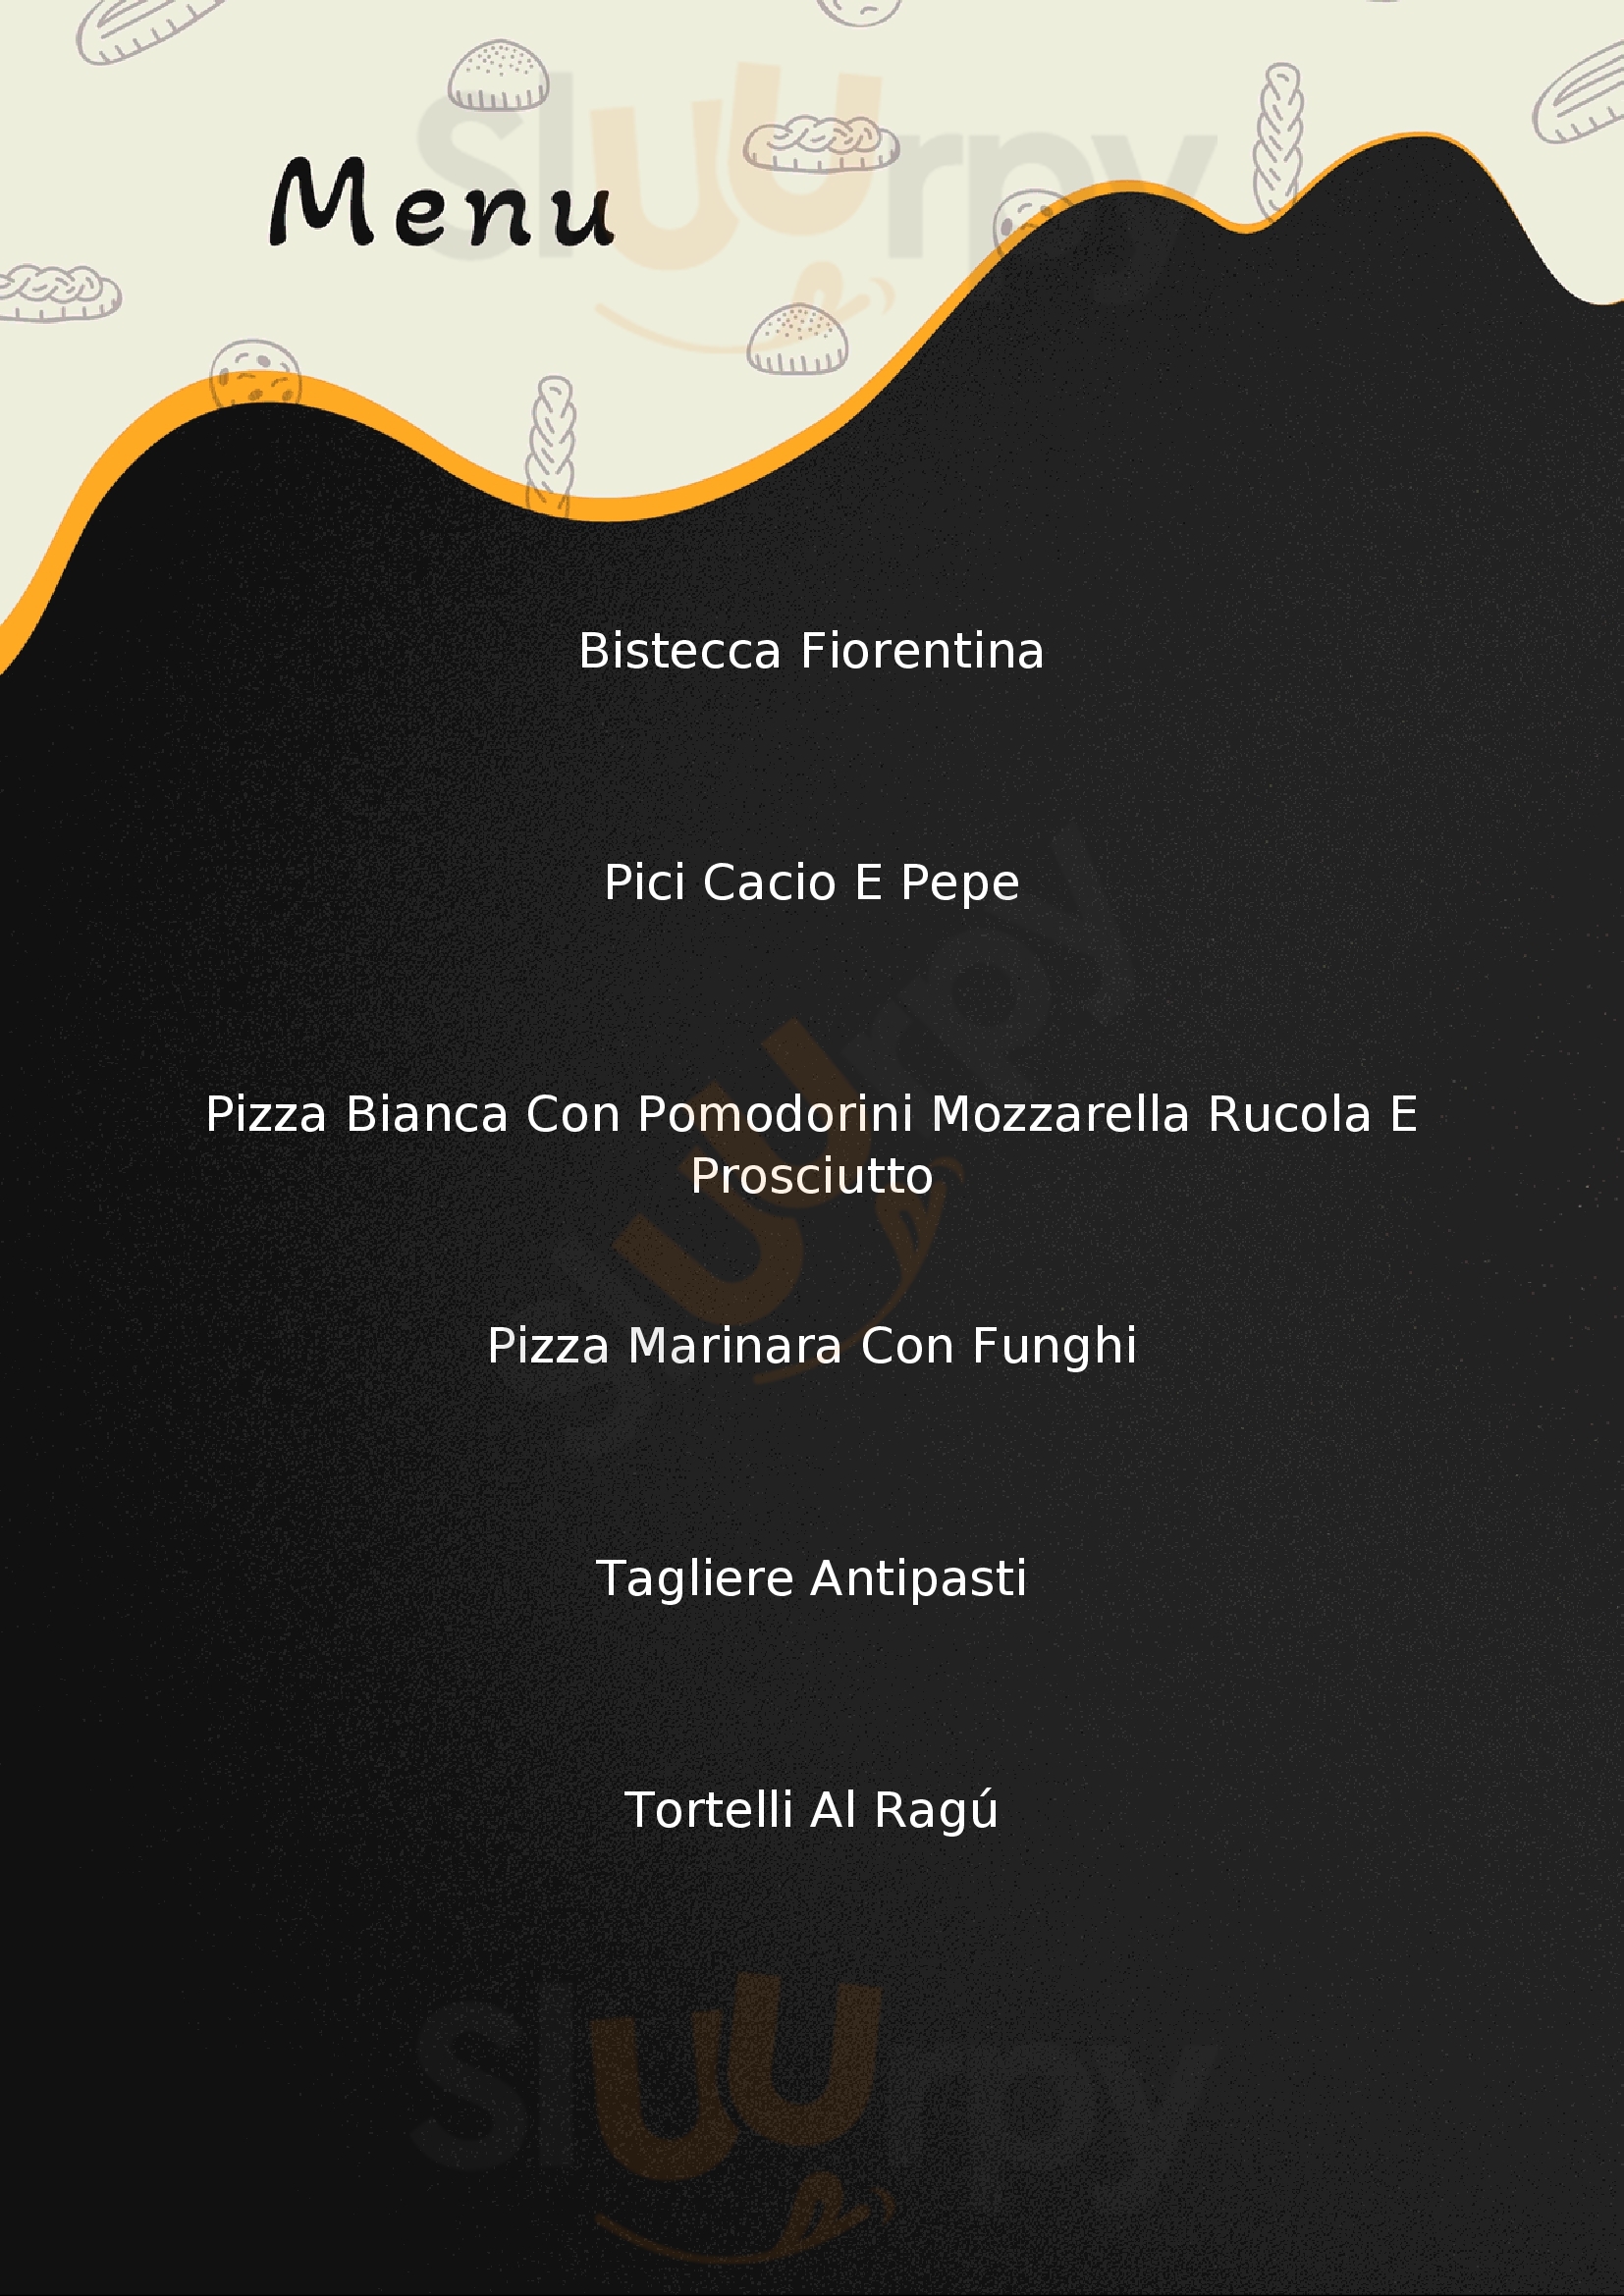 Trattoria Pizzeria Ballini Vaglia menù 1 pagina